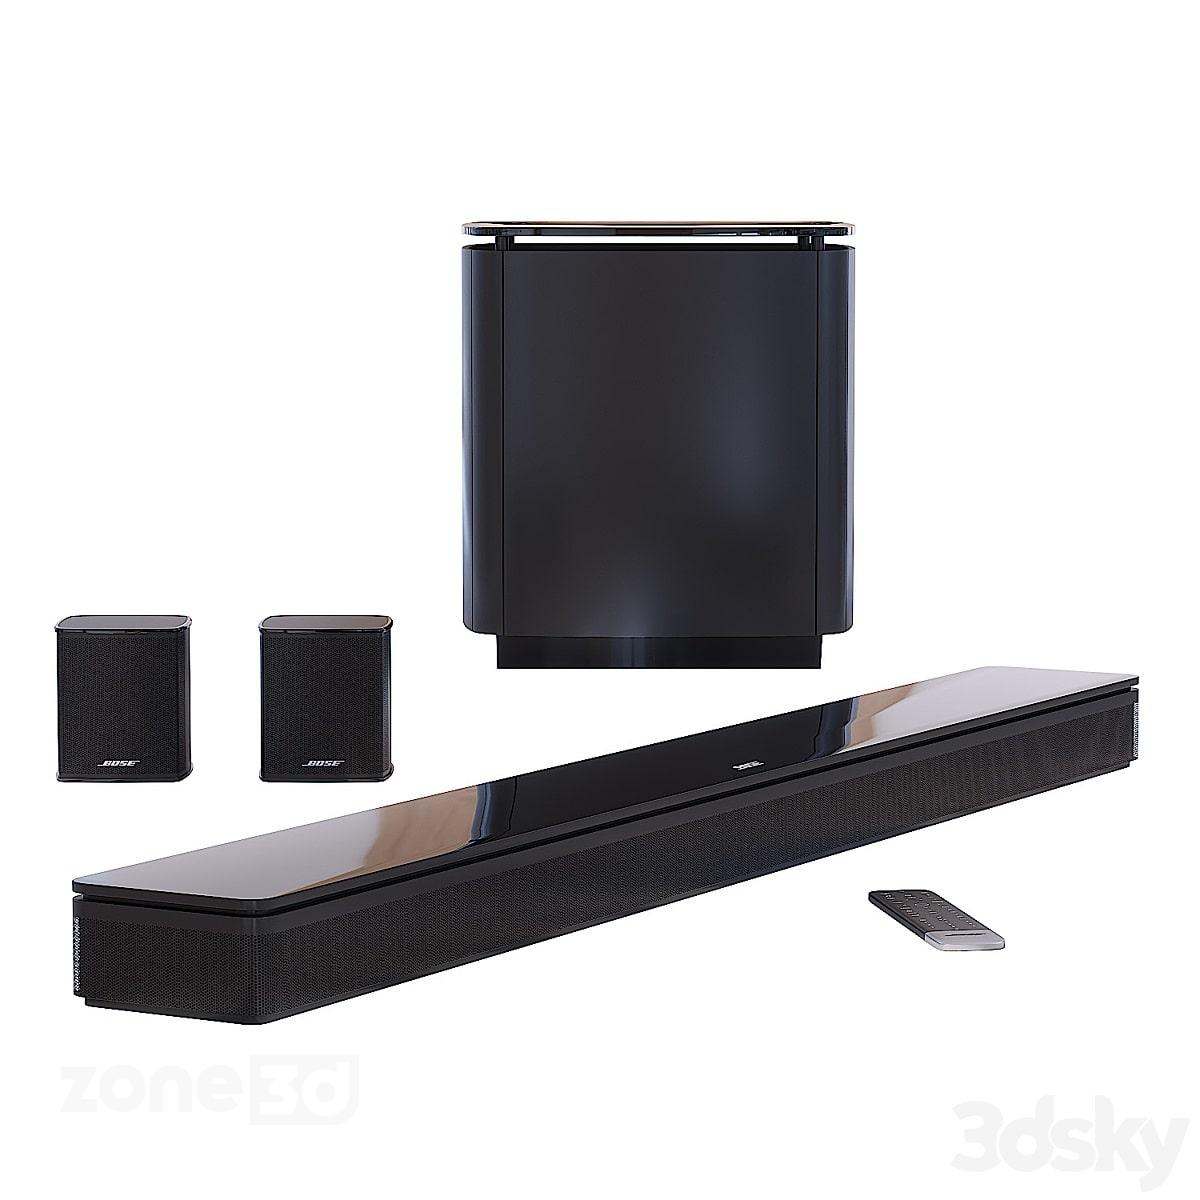 آبجکت ست ساند بار مدرن چوبی و پلاستیکی به همراه اسپیکر و ساب مدل Bose Surround Audio